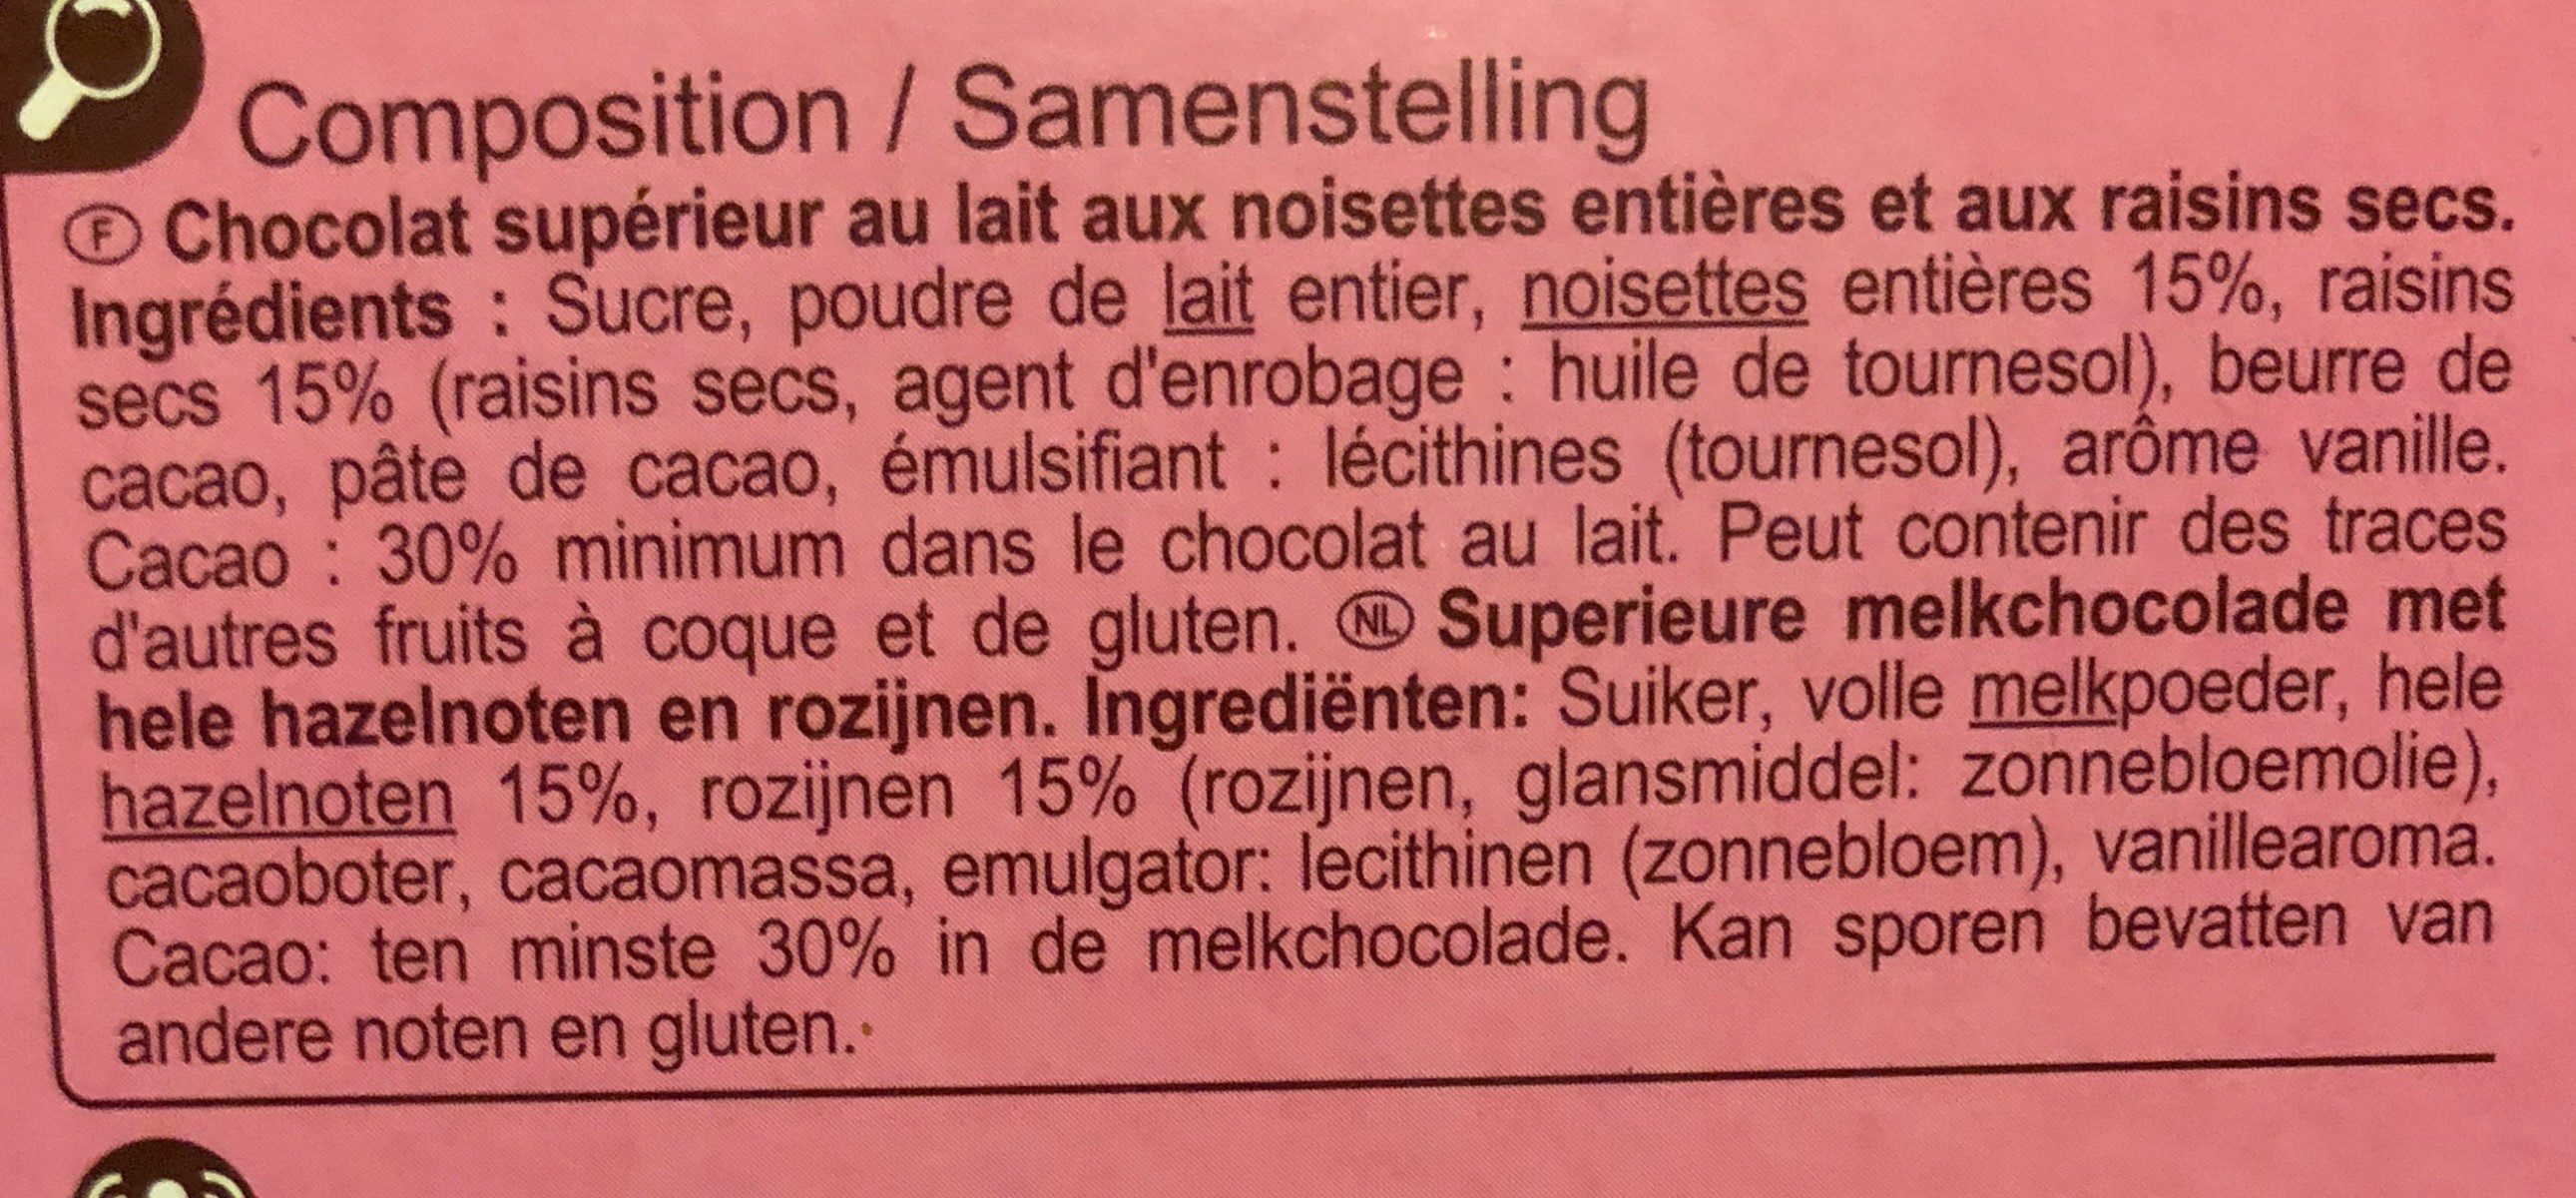 Lait noisettes & raisins - Ingredients - fr